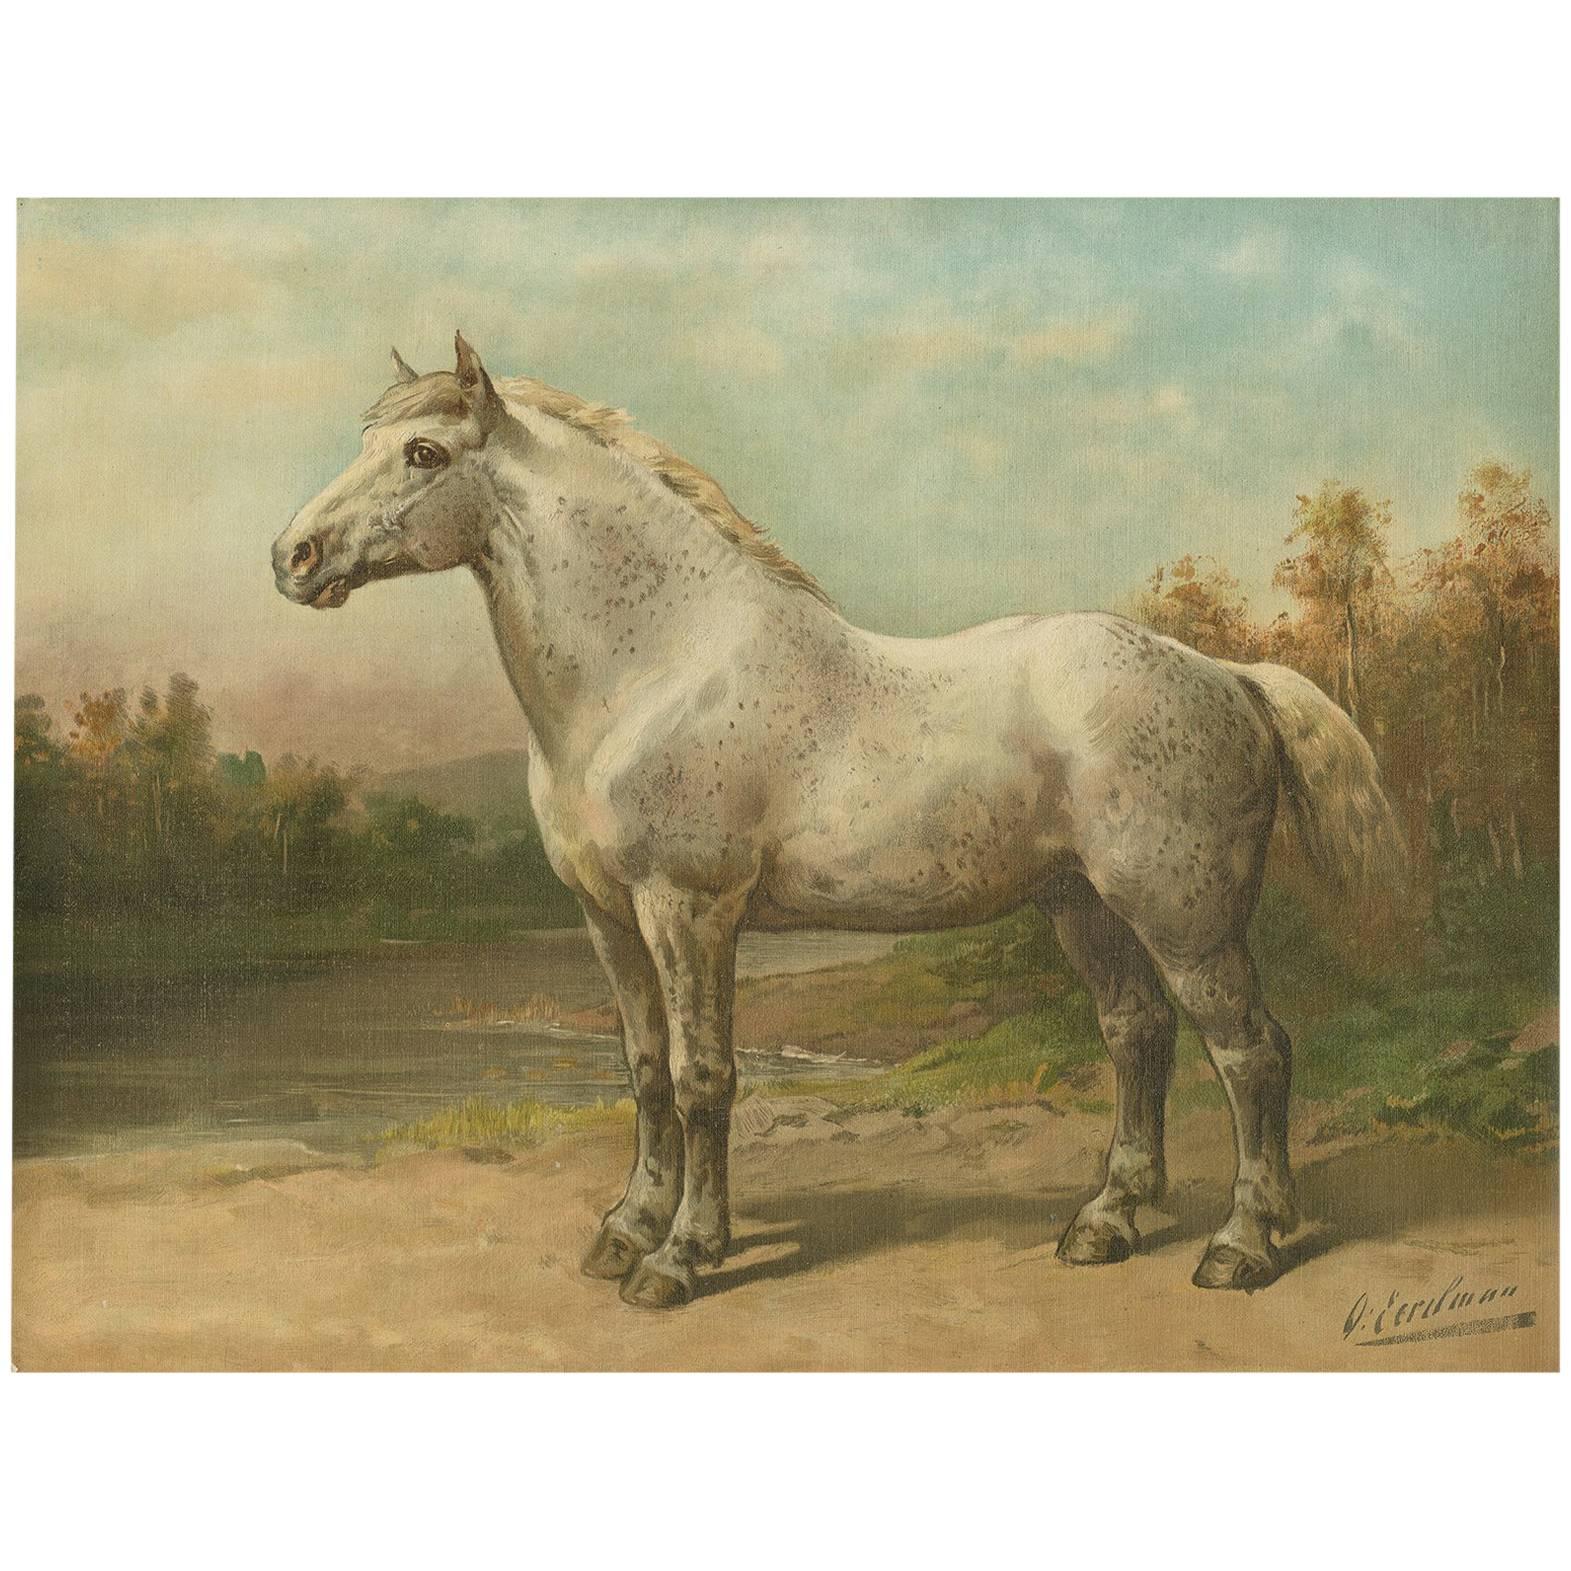 Antique Print of the Boulon Horse by O. Eerelman, 1898